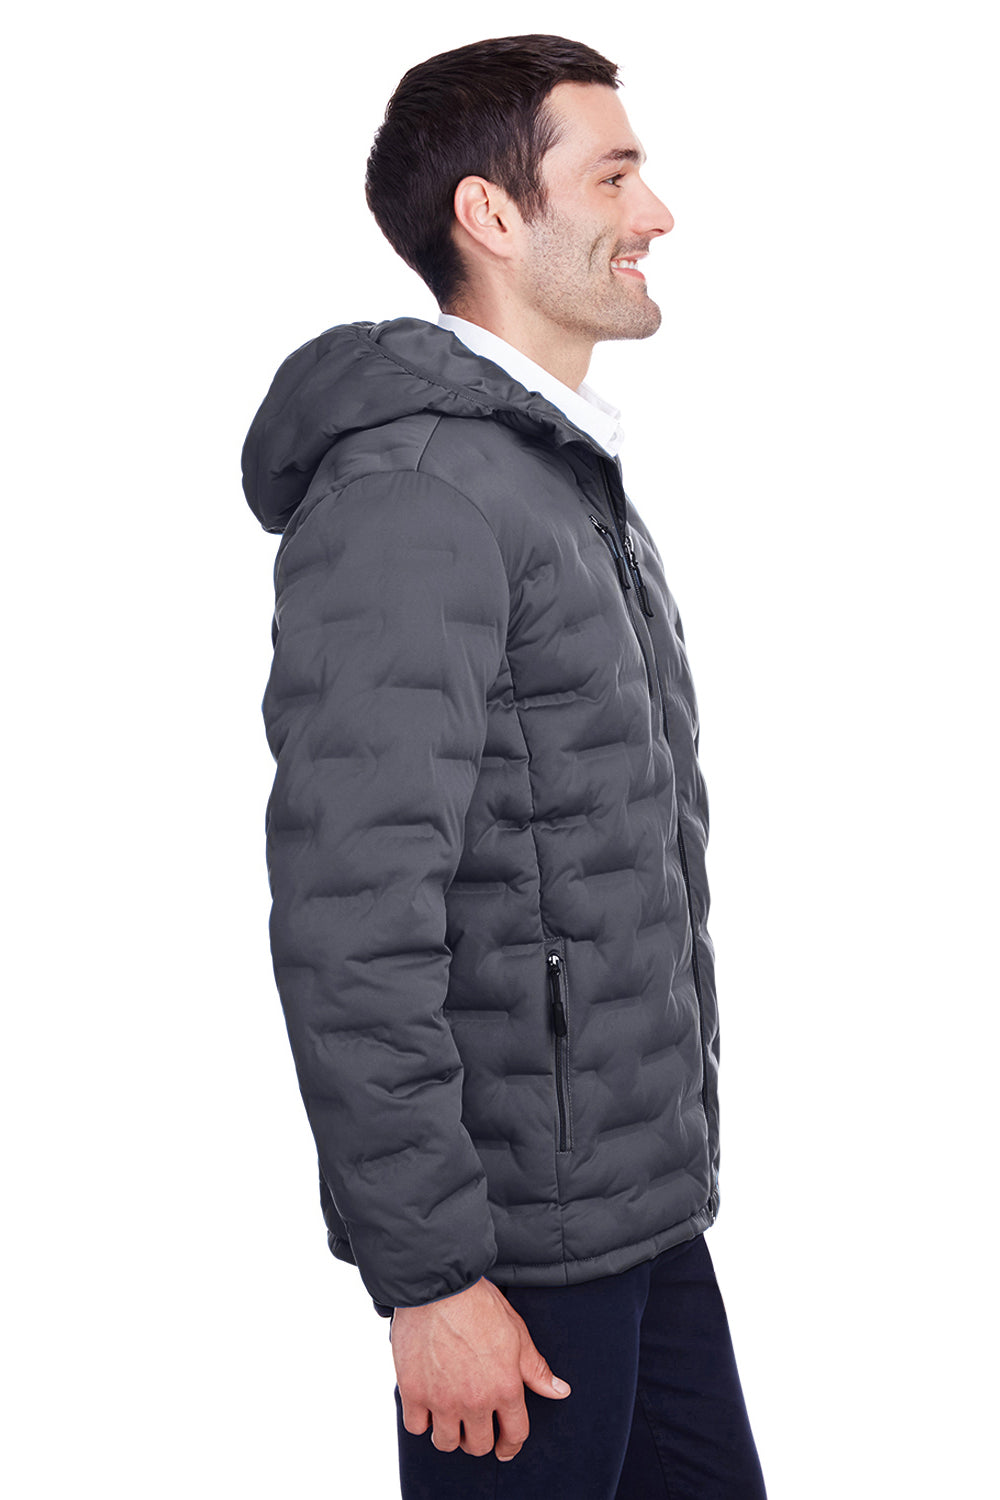 North End NE708 Mens Loft Waterproof Full Zip Hooded Puffer Jacket Carbon Grey/Black Side